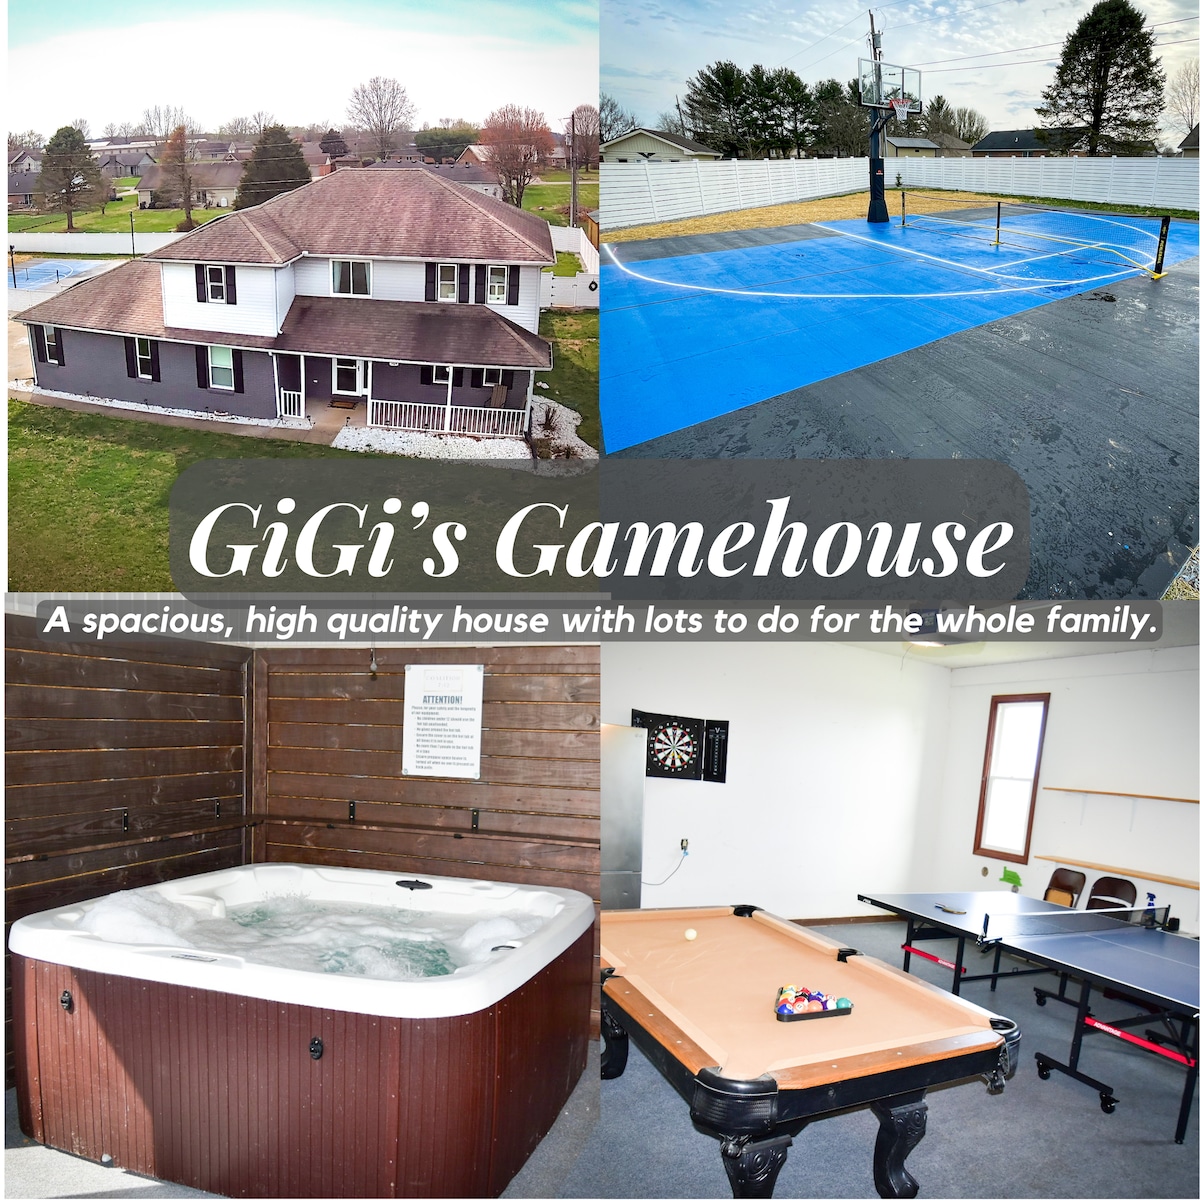 Gigi 's Gamehouse |享受所有人的乐趣